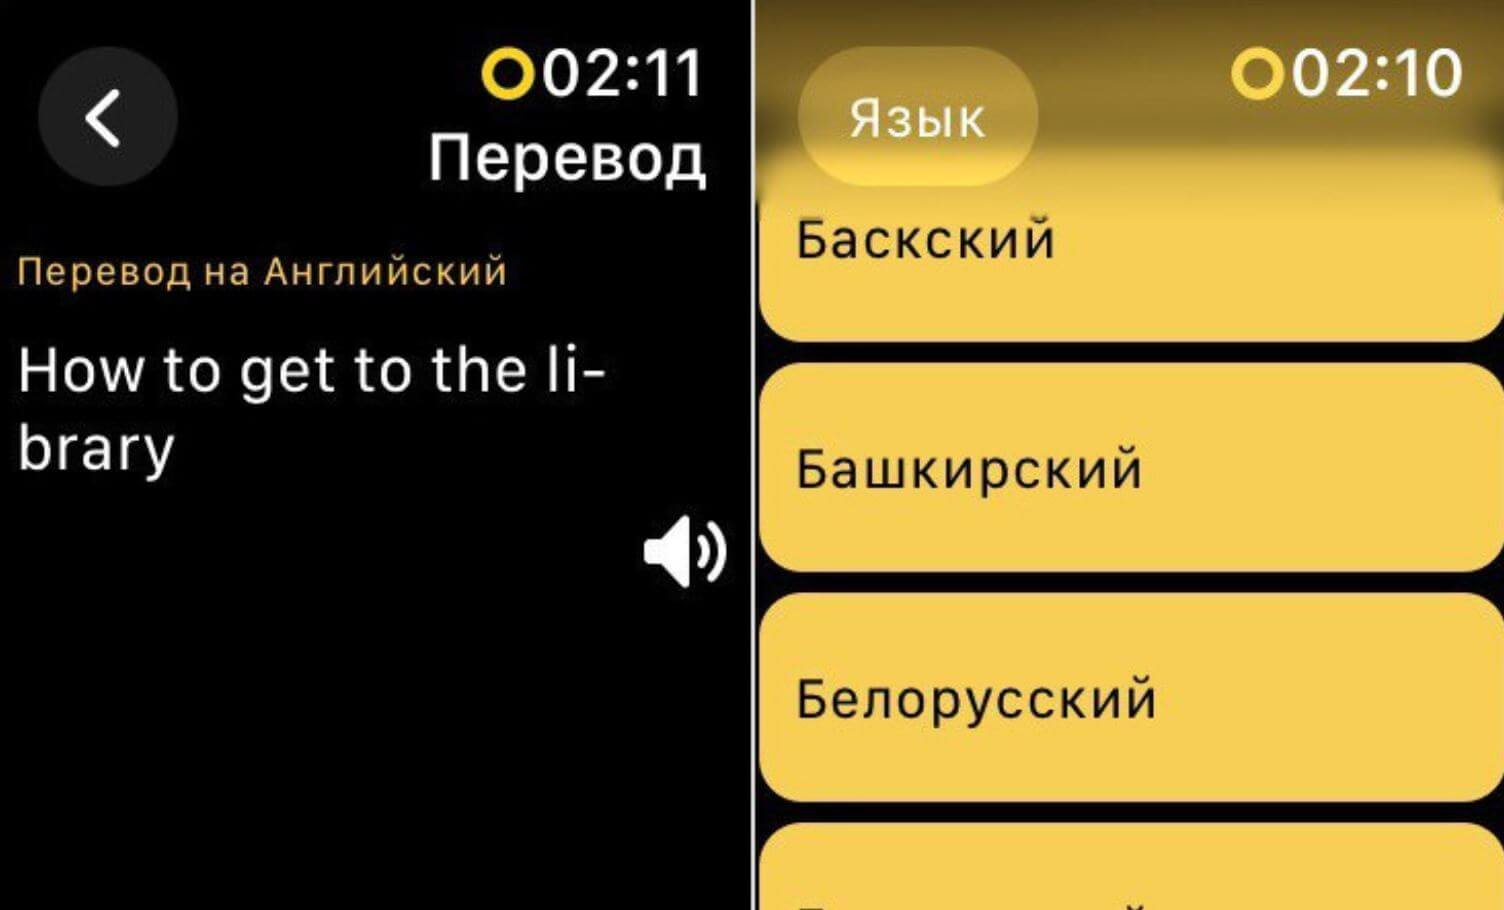 Бесплатный переводчик для Apple Watch. Переводчик Яндекса быстро работает в режиме реального времени. Фото.